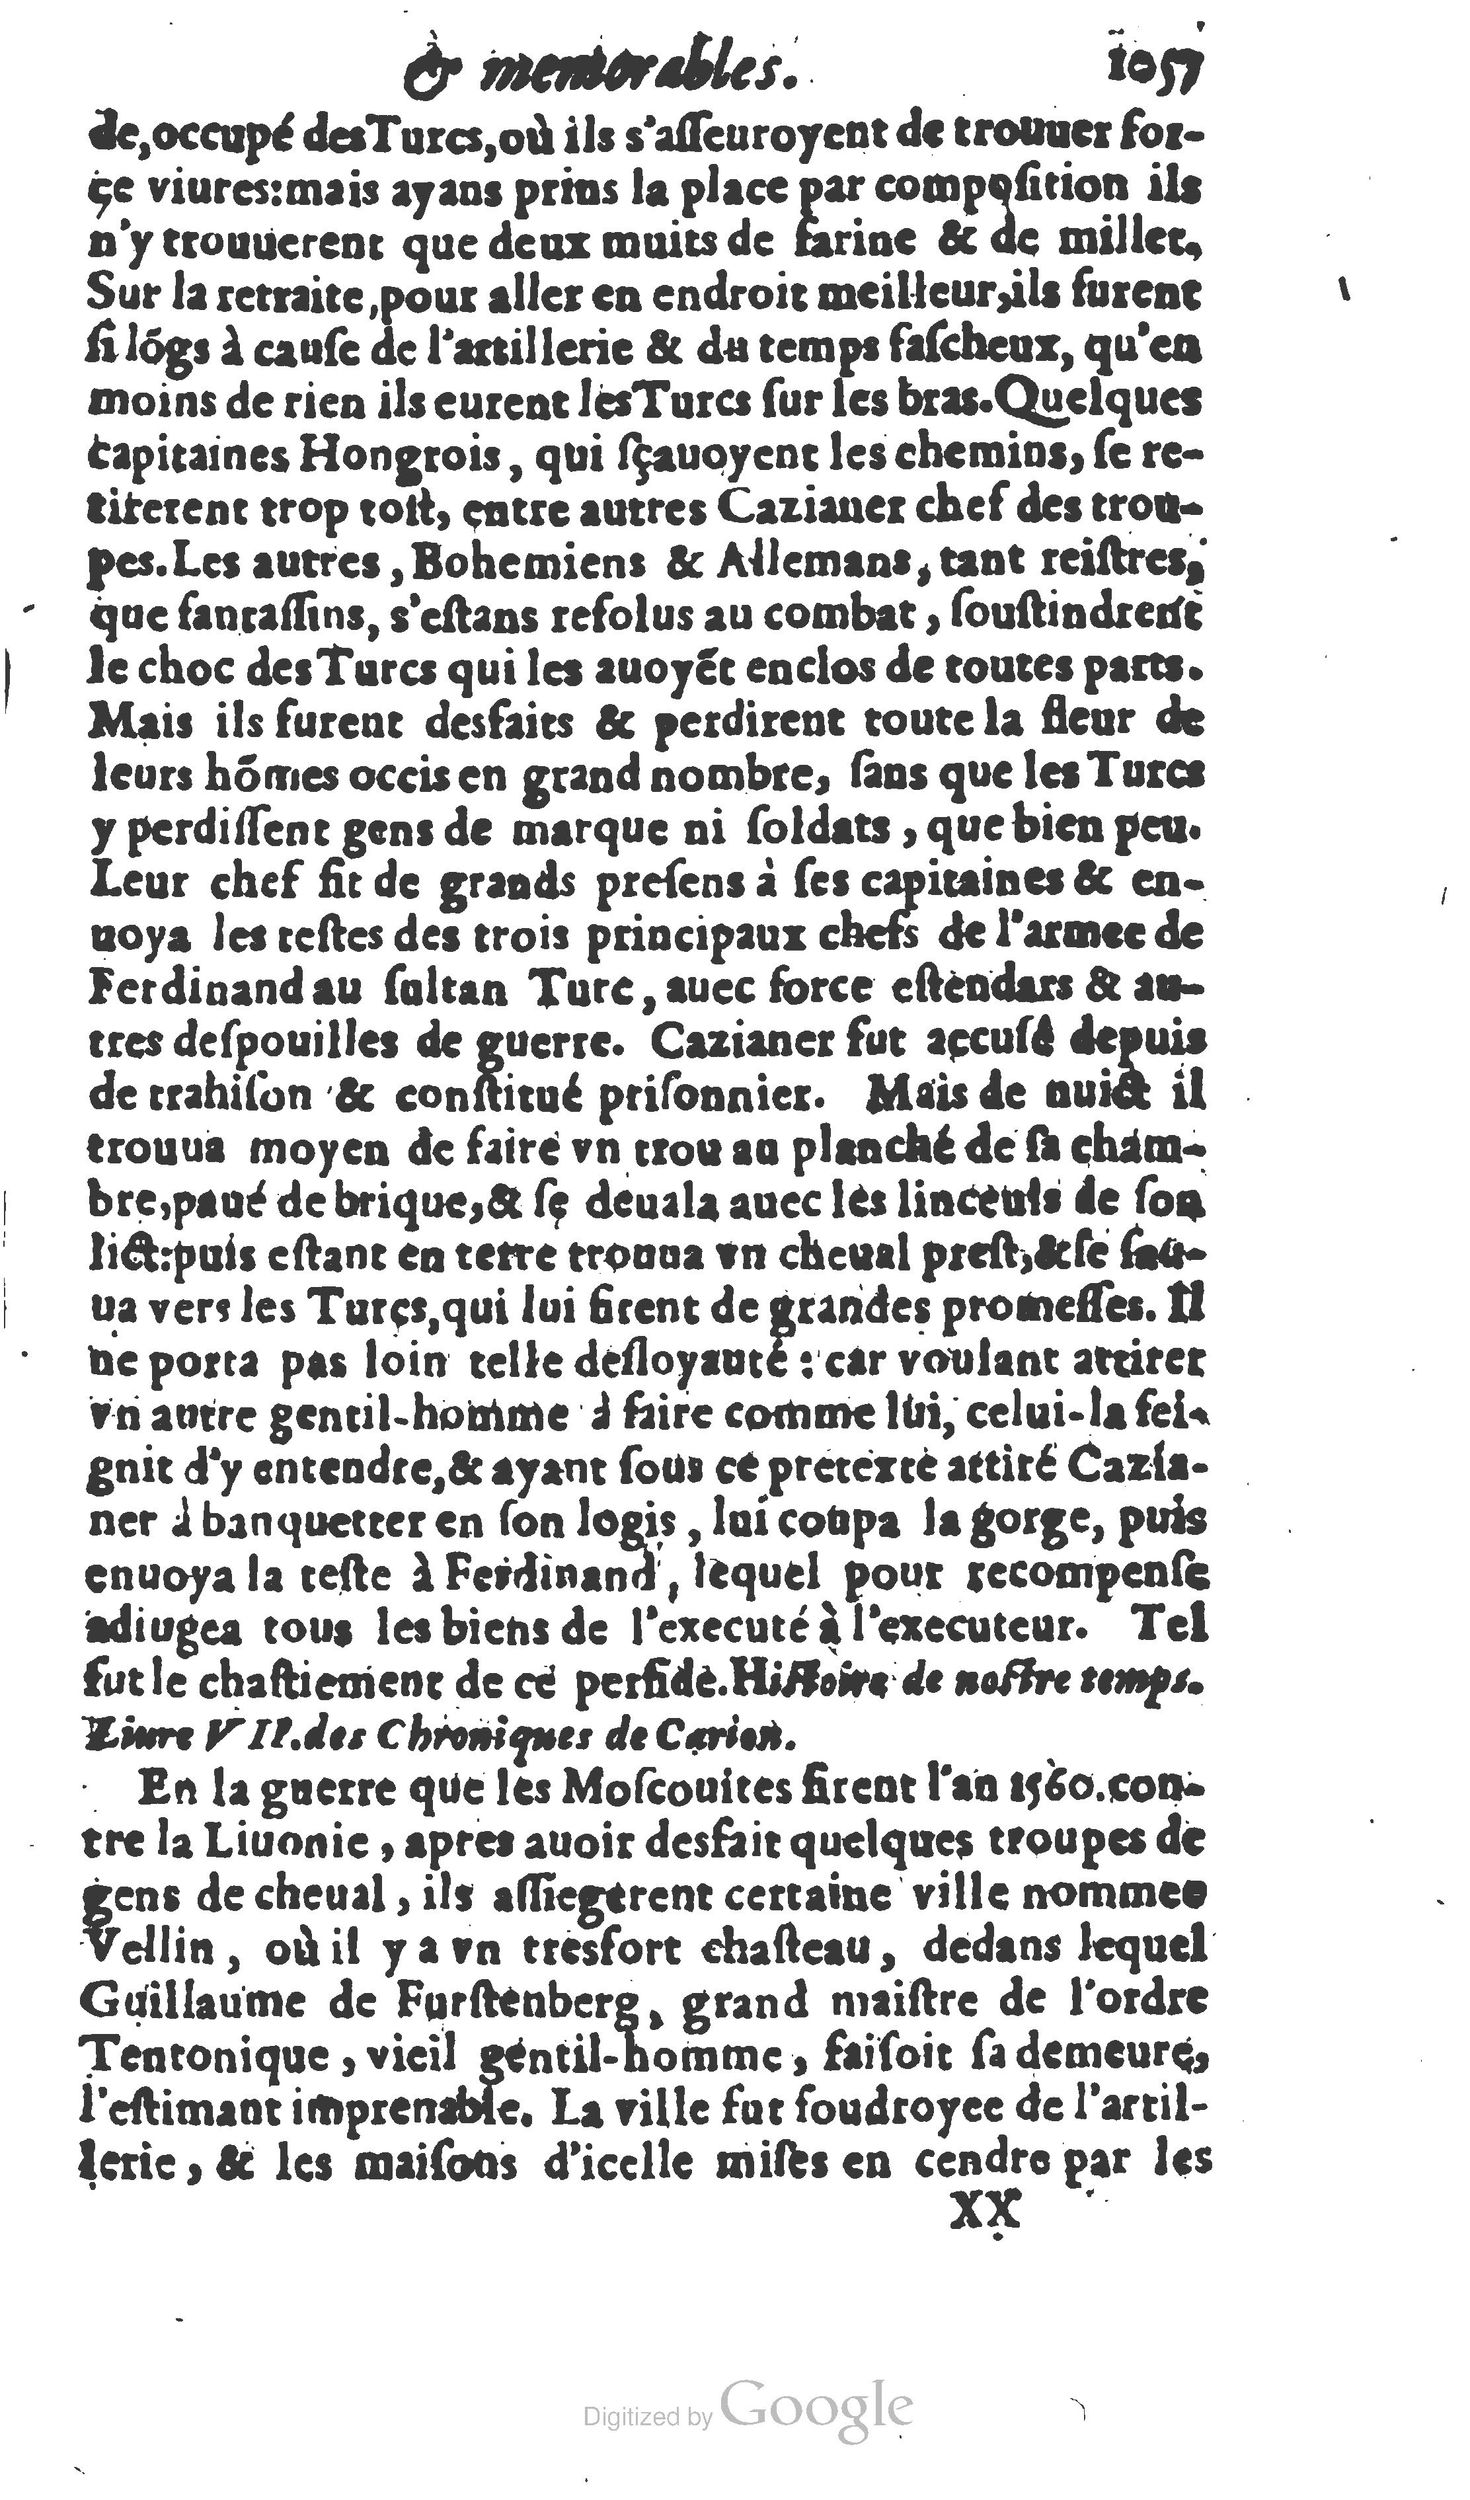 1610 Trésor d’histoires admirables et mémorables de nostre temps Marceau Princeton_Page_1078.jpg